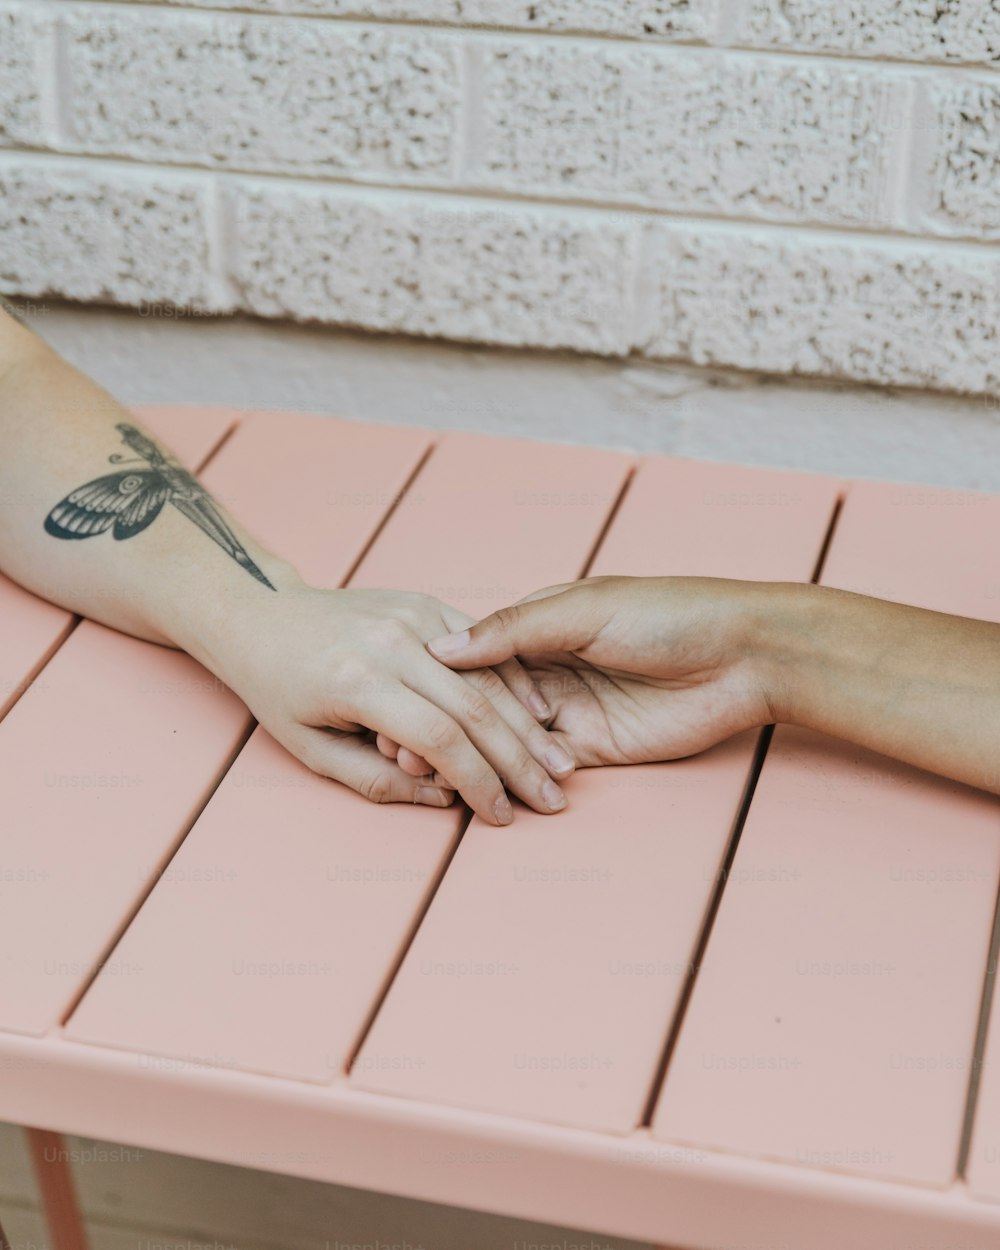 Eine Person mit einem Libellen-Tattoo auf dem Arm, die auf einer rosa Bank sitzt